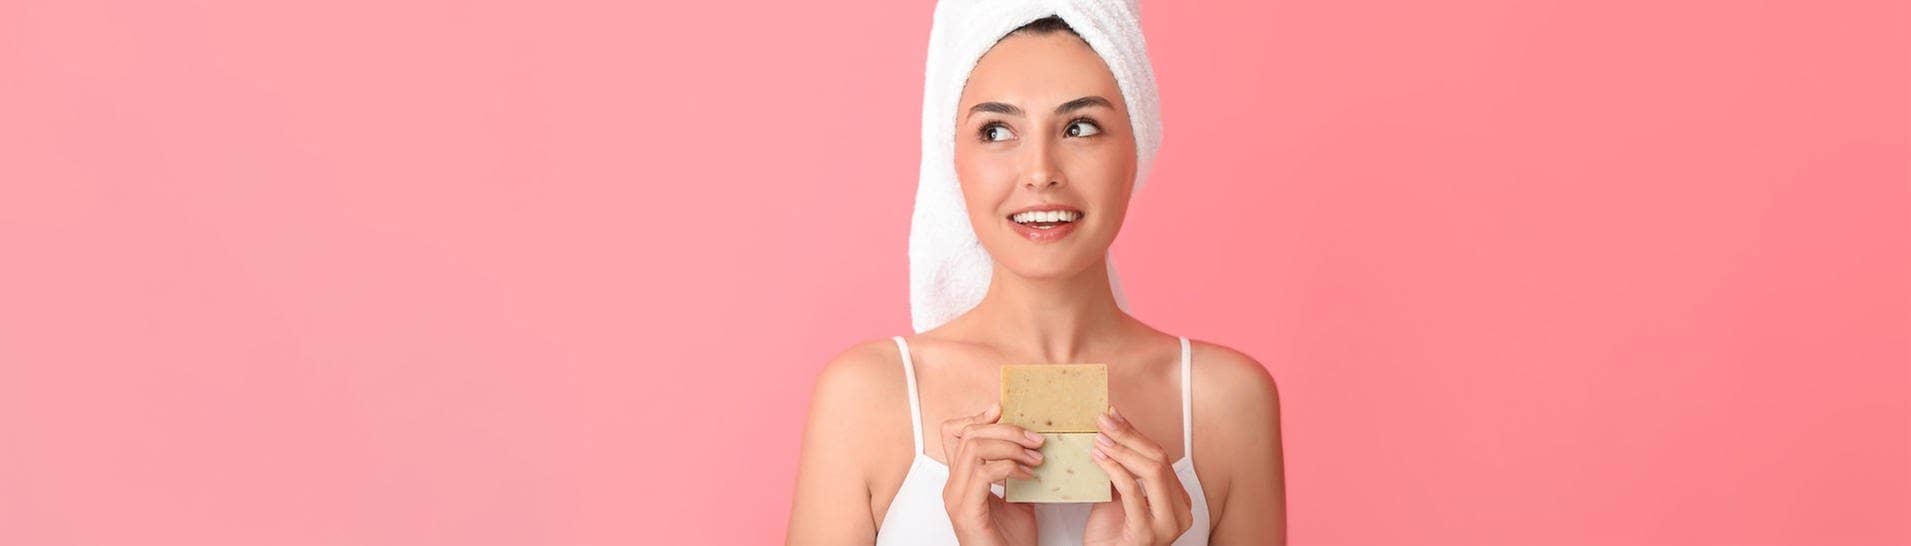 Eine junge Frau hält Seife in der Hand und fragt sich, ob wir wirklich Seife brauchen, um richtig sauber zu werden (Foto: Adobe Stock, Pixel-Shot)